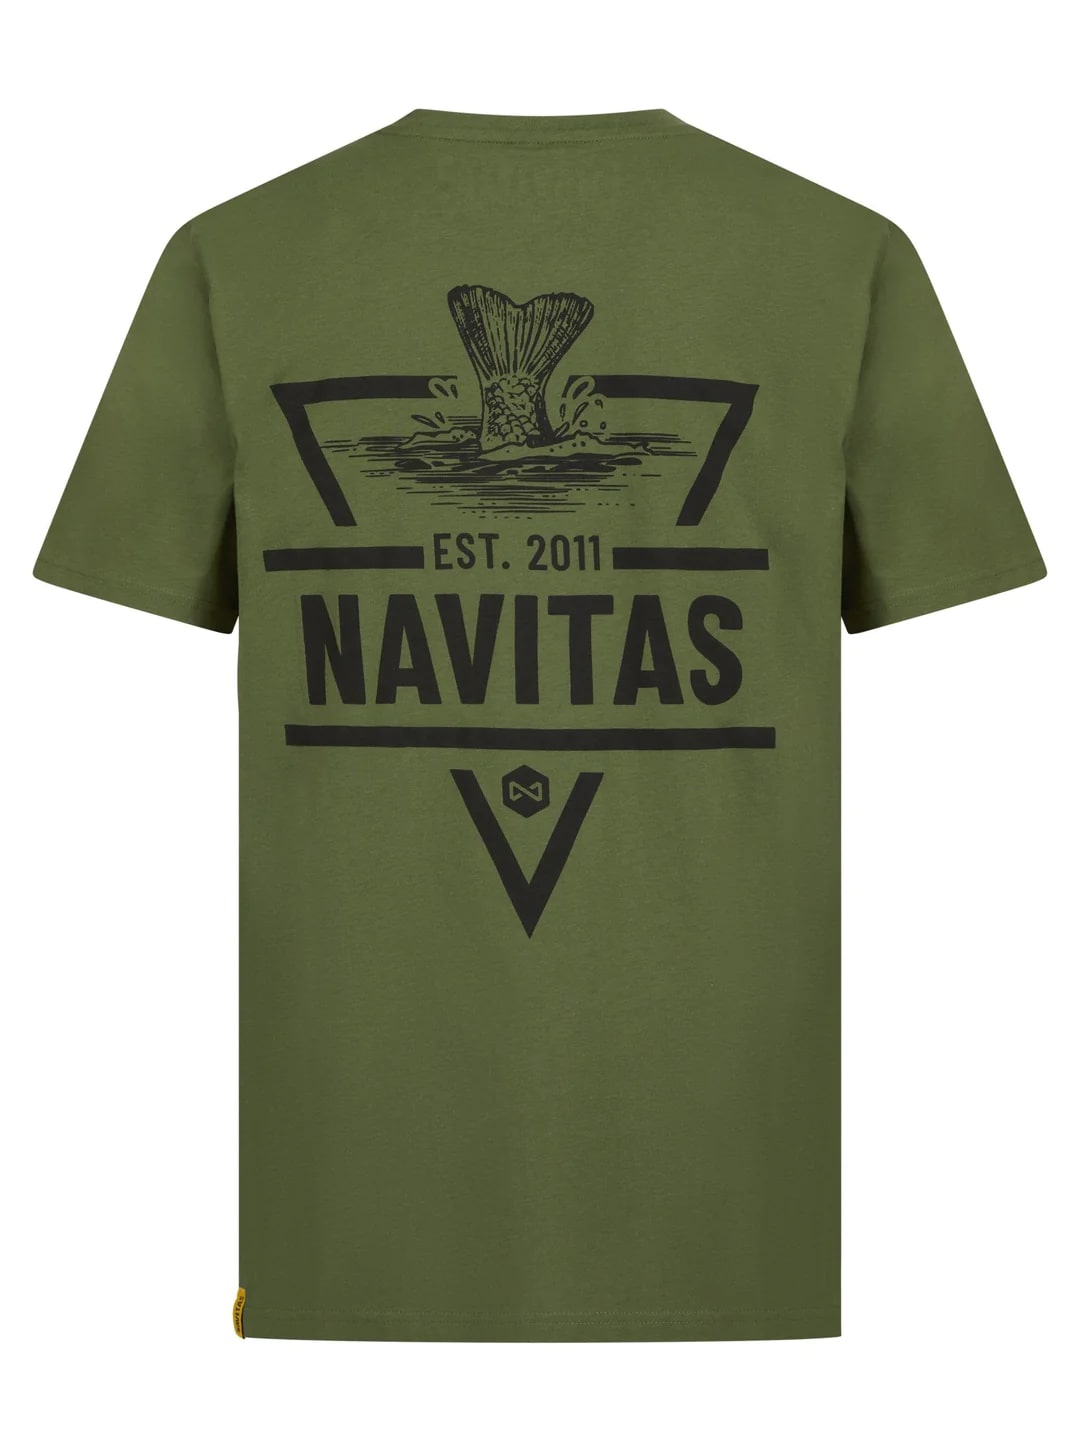 Navitas Diving T-Shirt